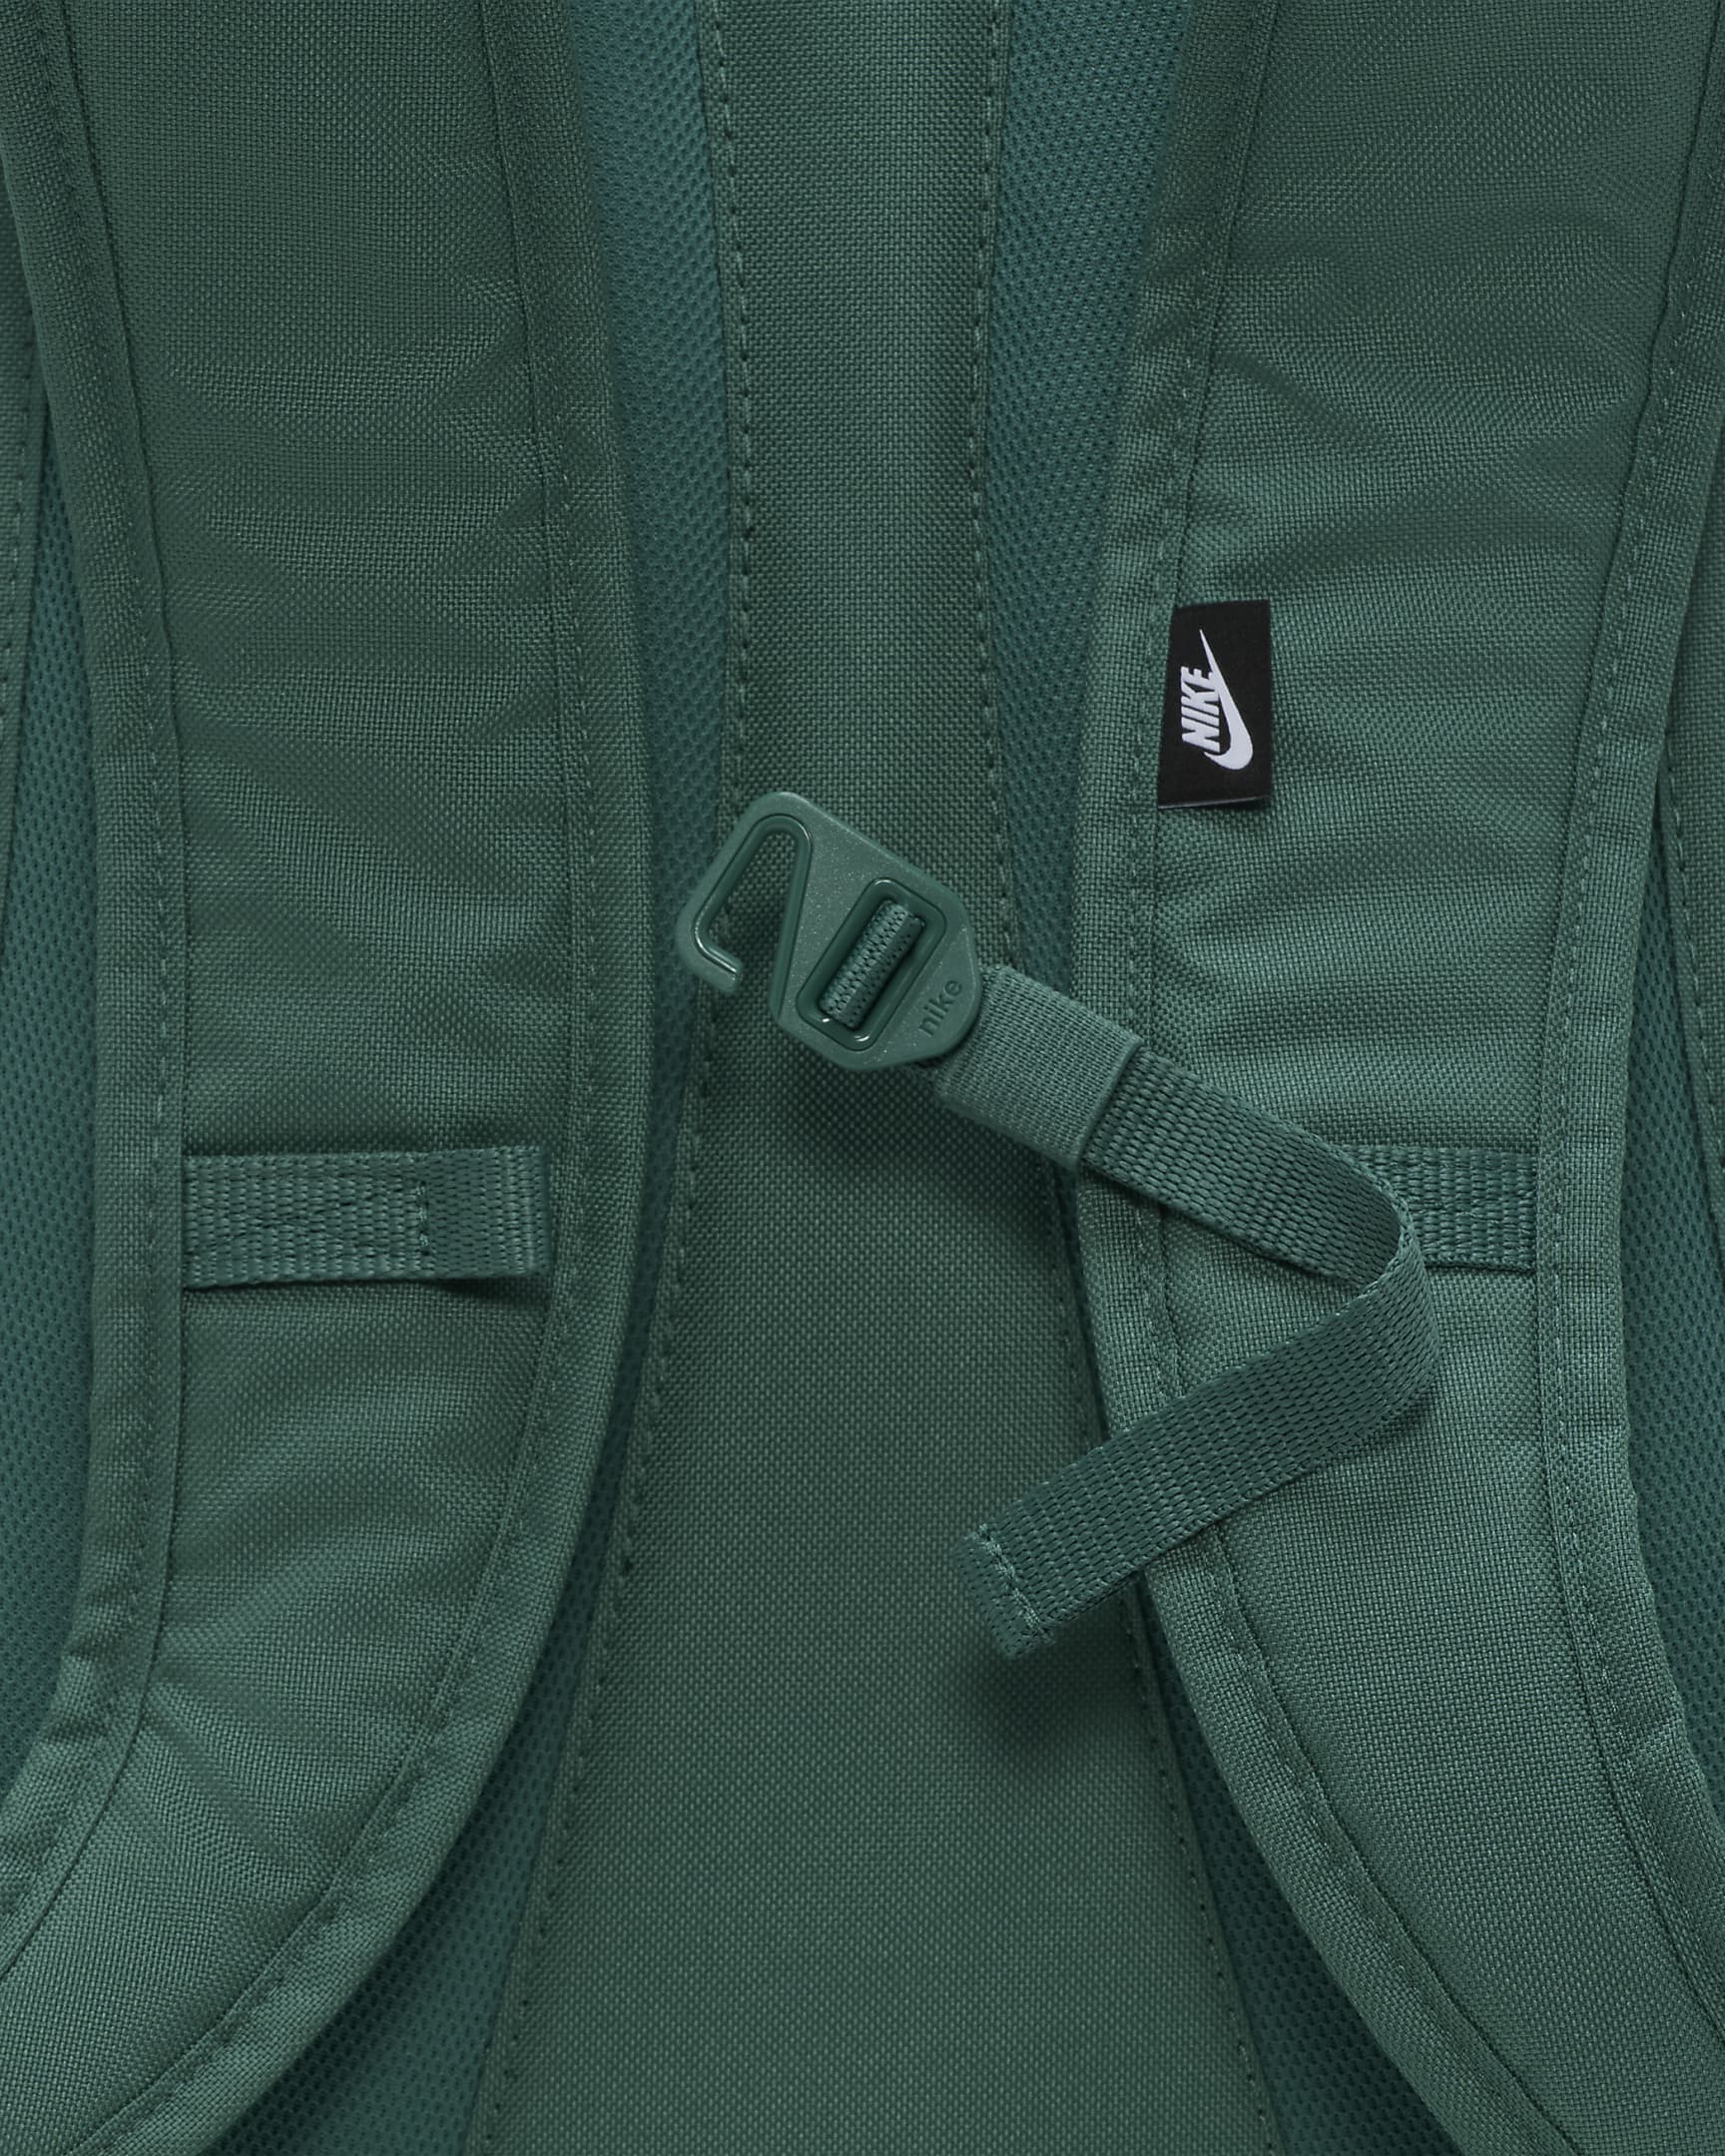 Nike Hayward Backpack (26L) - Bicoastal/Bicoastal/Vintage Green